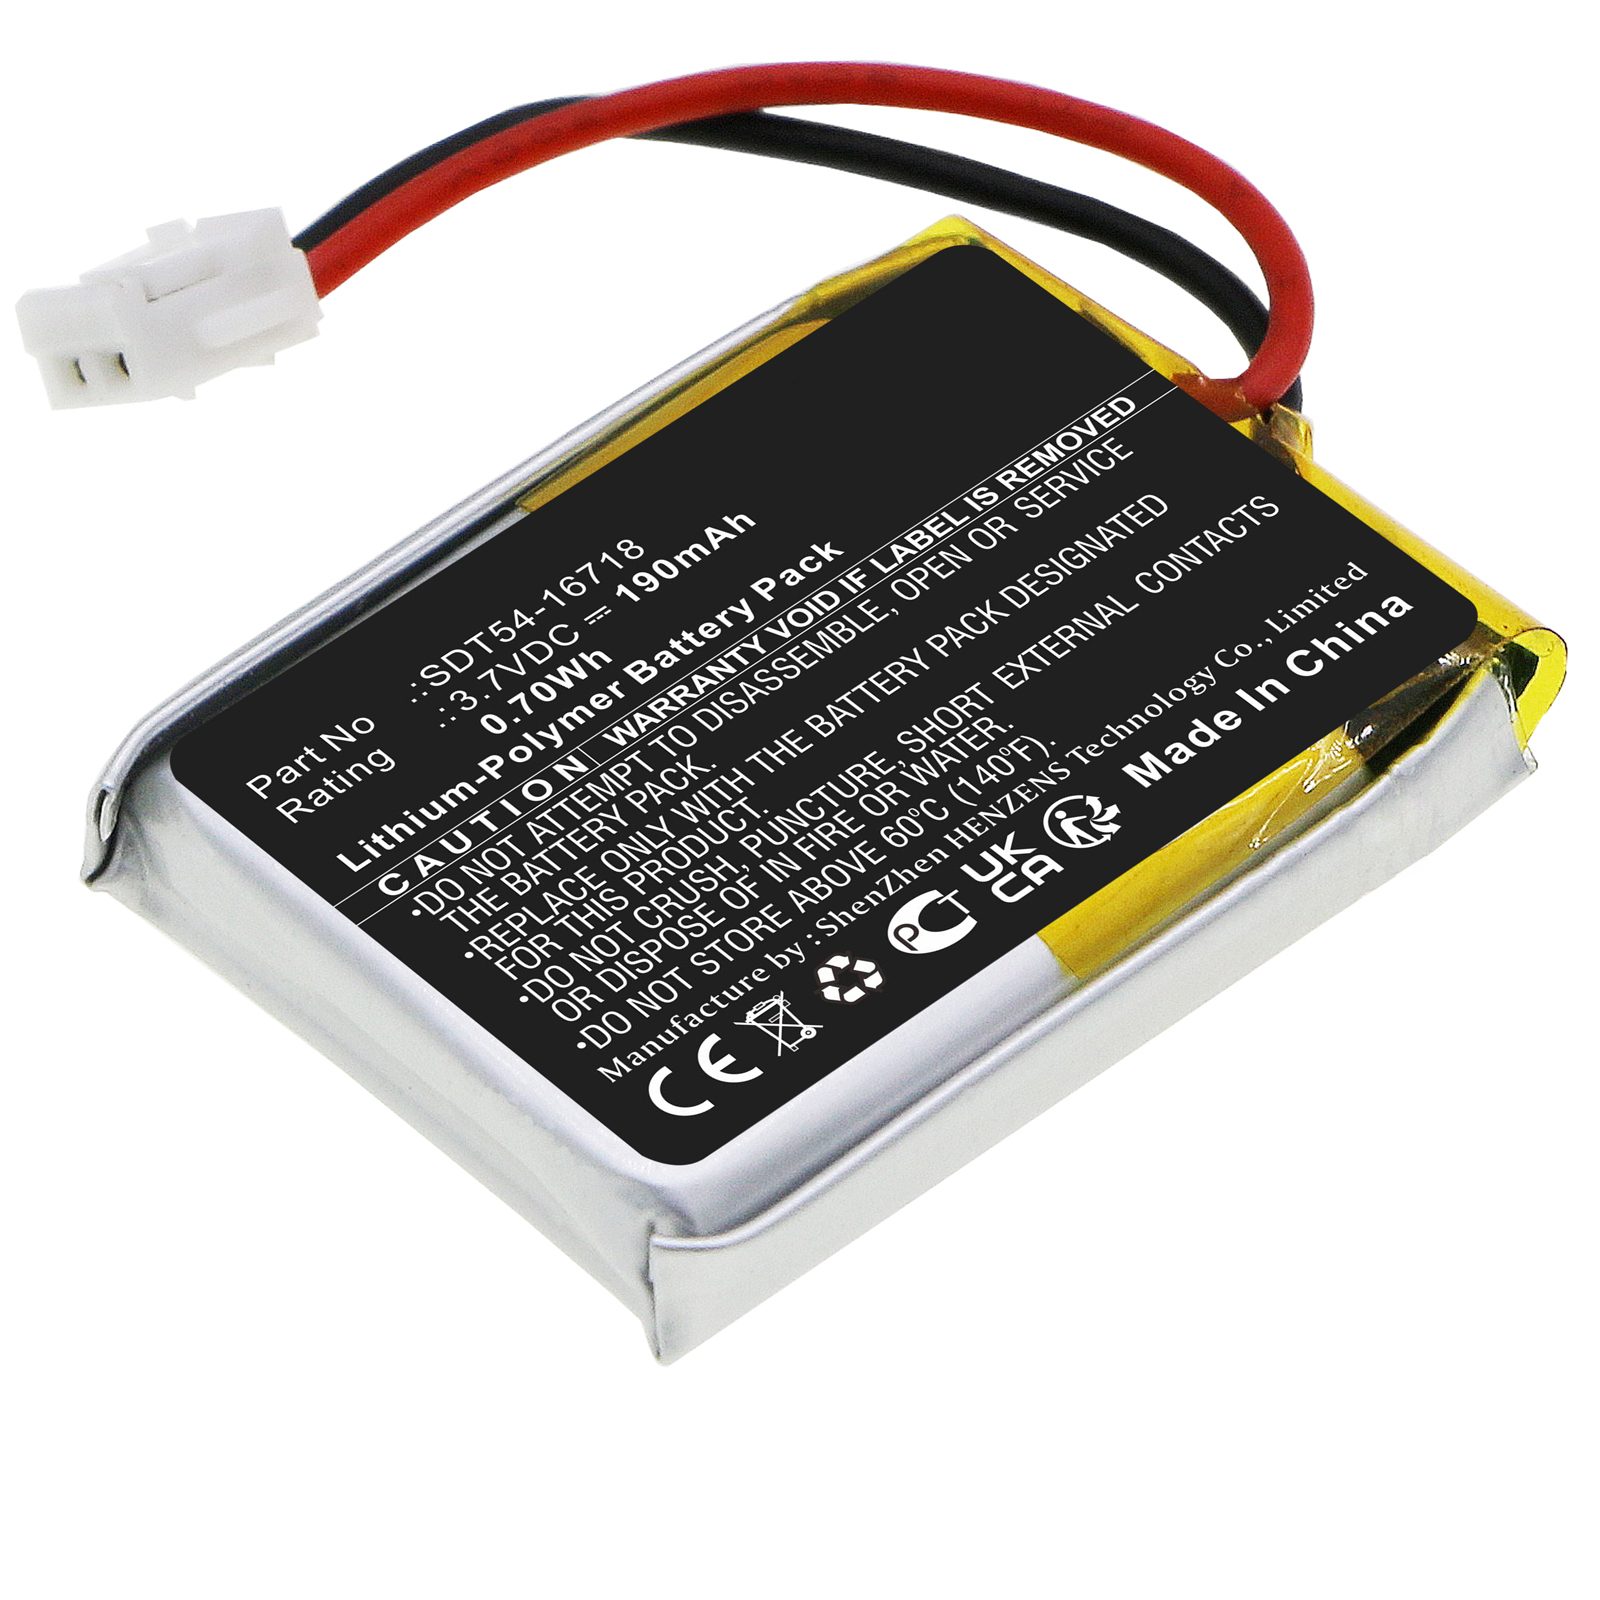 Synergy Digital Communication Battery, Compatible with Sportdog SDT54-16718 Communication Battery (Li-Pol, 3.7V, 190mAh)